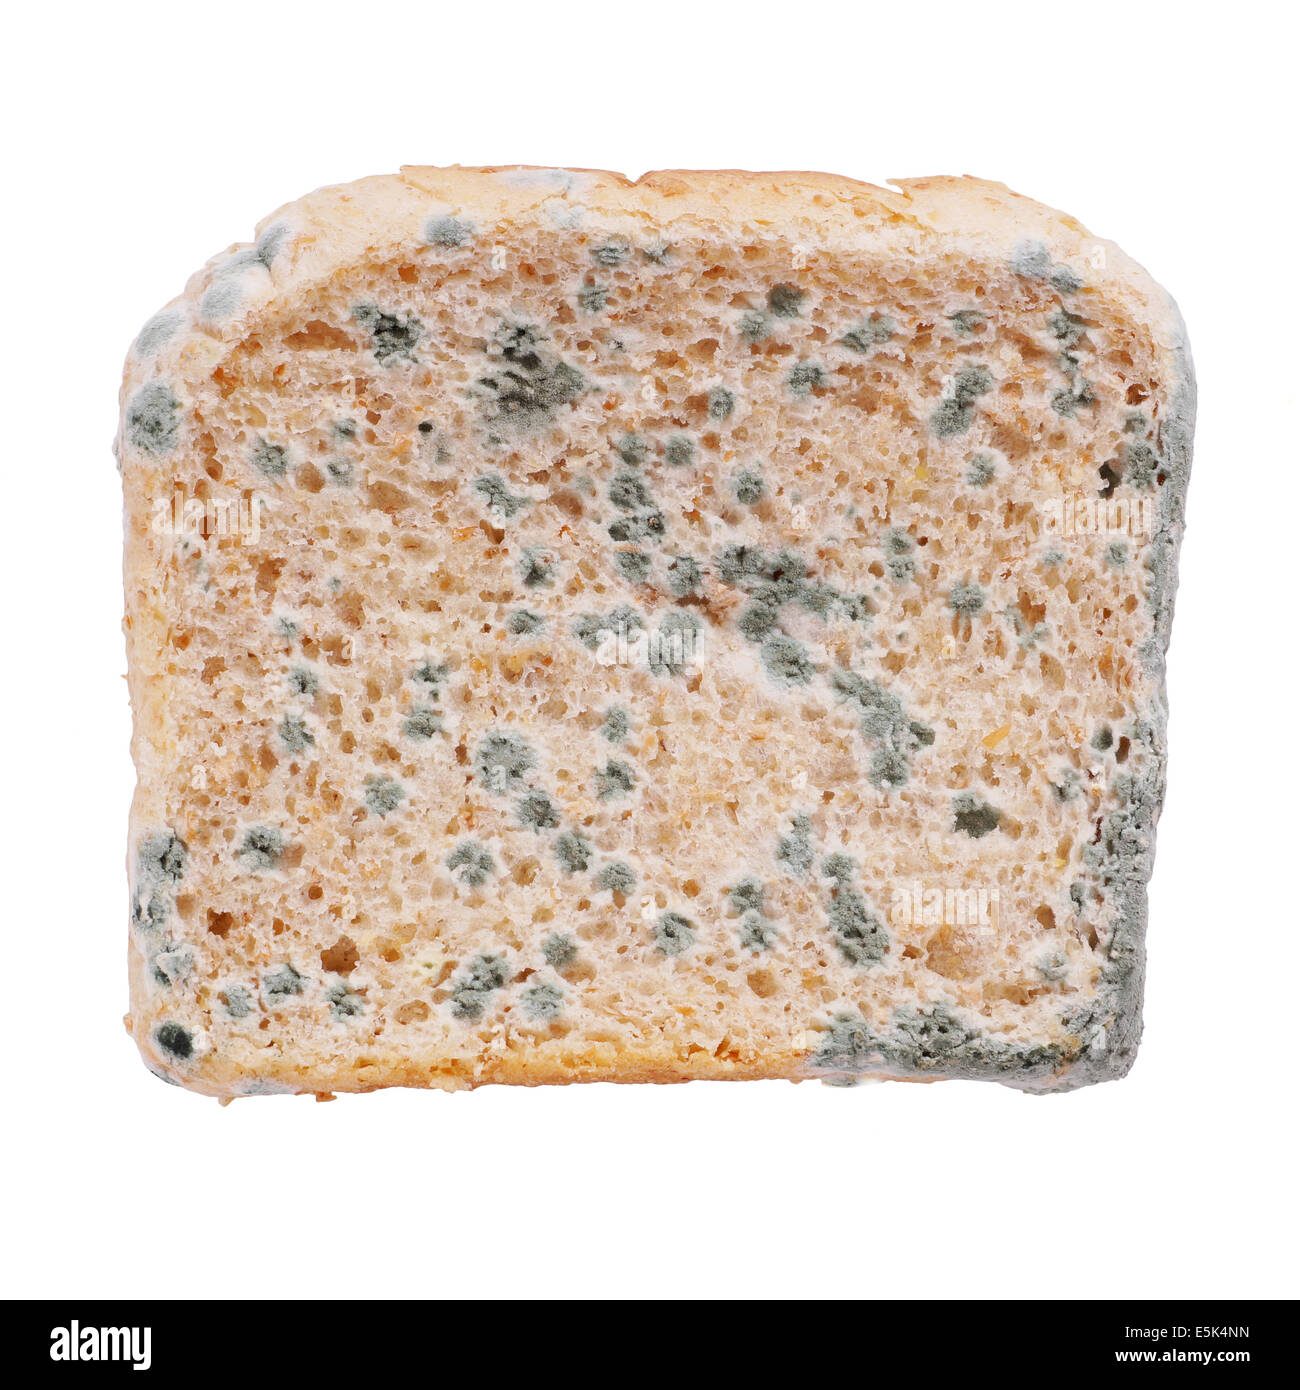 https://c8.alamy.com/comp/E5K4NN/moldy-toast-bread-isolated-on-white-E5K4NN.jpg